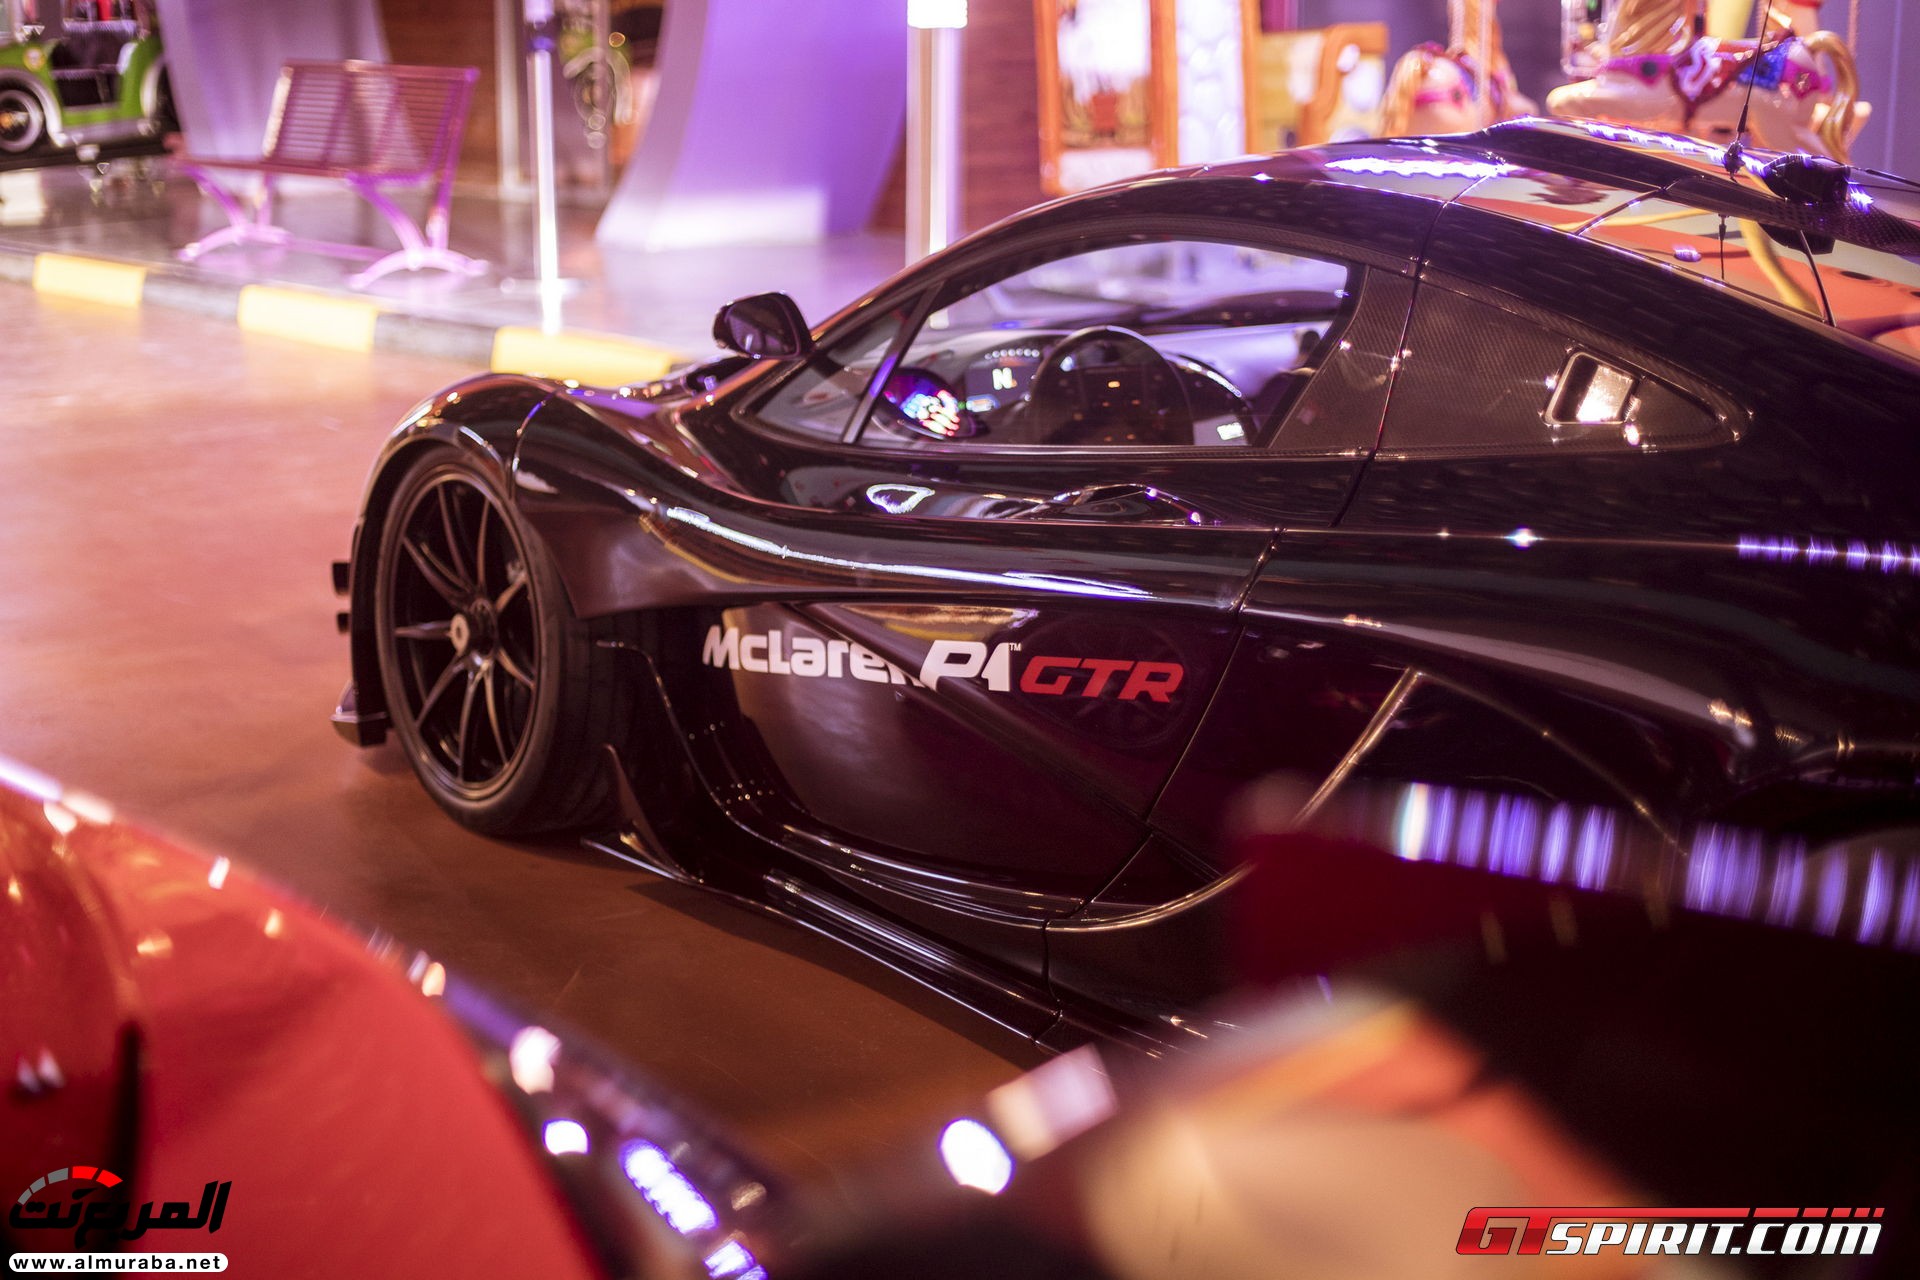 "بالصور" مكلارين P1 GTR تصل أراضي دبي وتعرض وحدتين منها بالمنتزه الأكبر في العالم McLaren 98